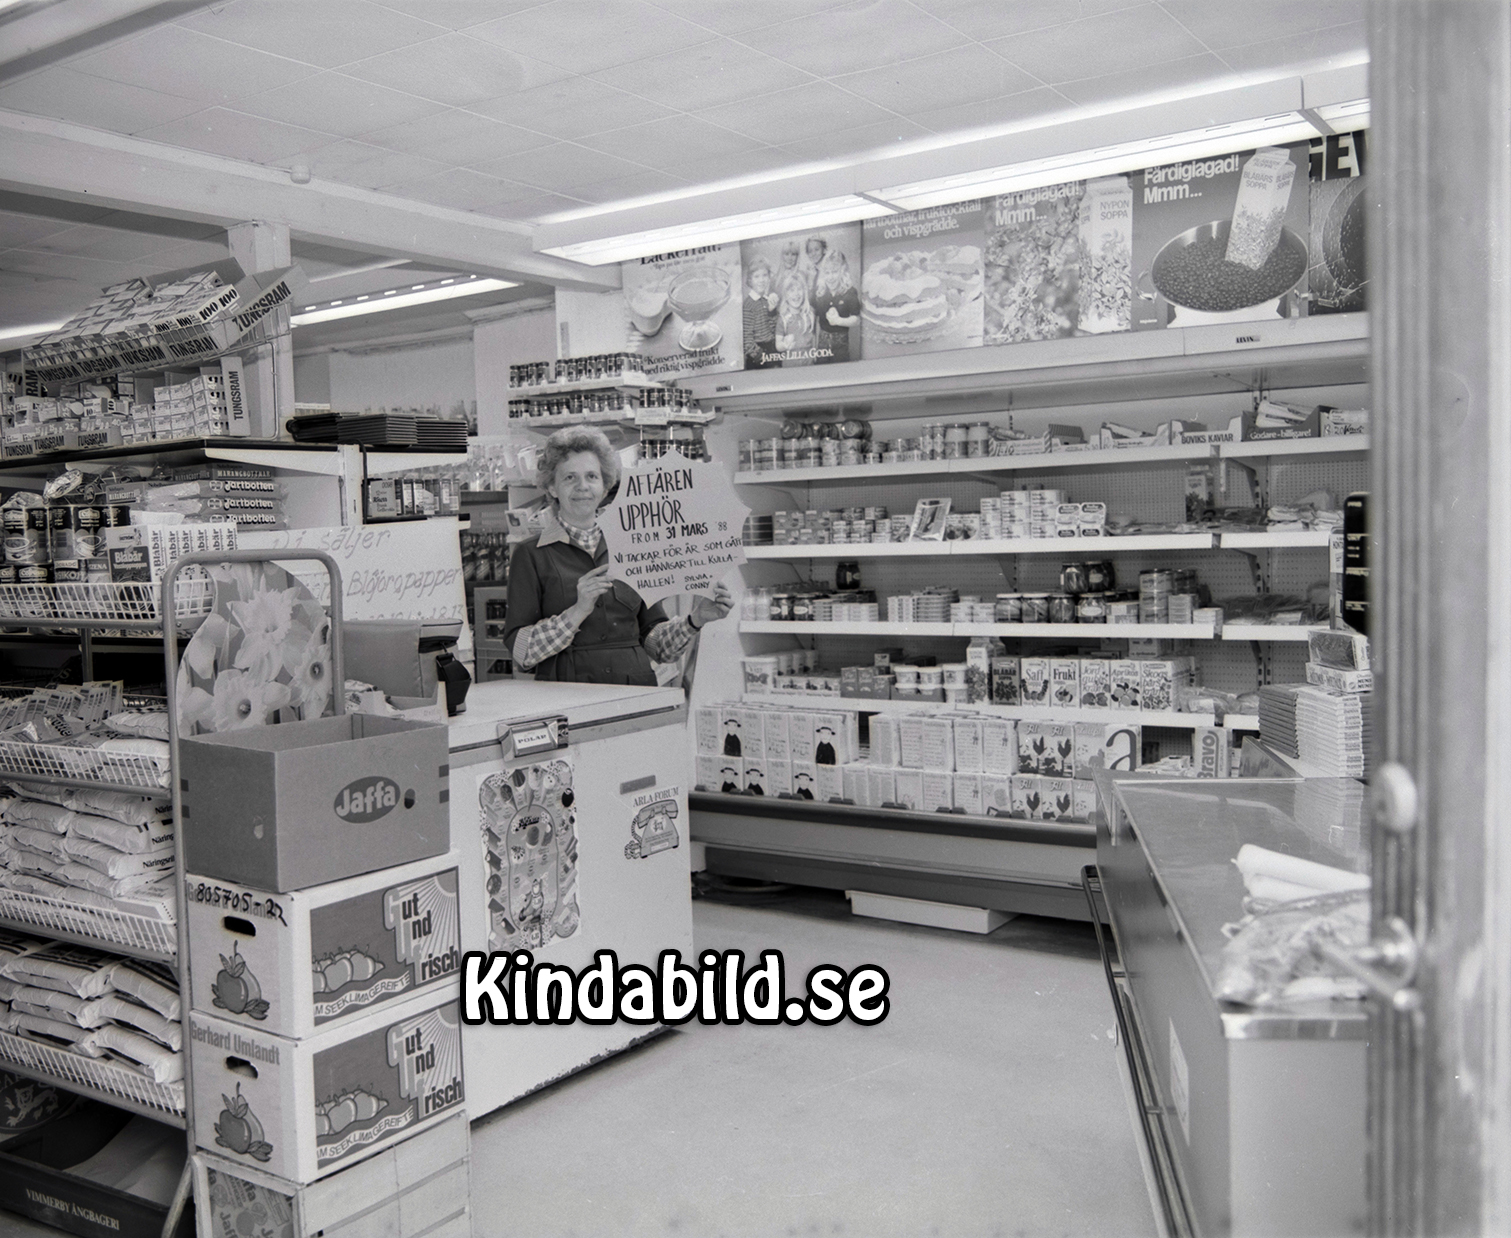 Ekonomiköp Kisa
raja
Bildserie tagen innan nedläggning av butiken

Nyckelord: Ekonomiköp Kisa